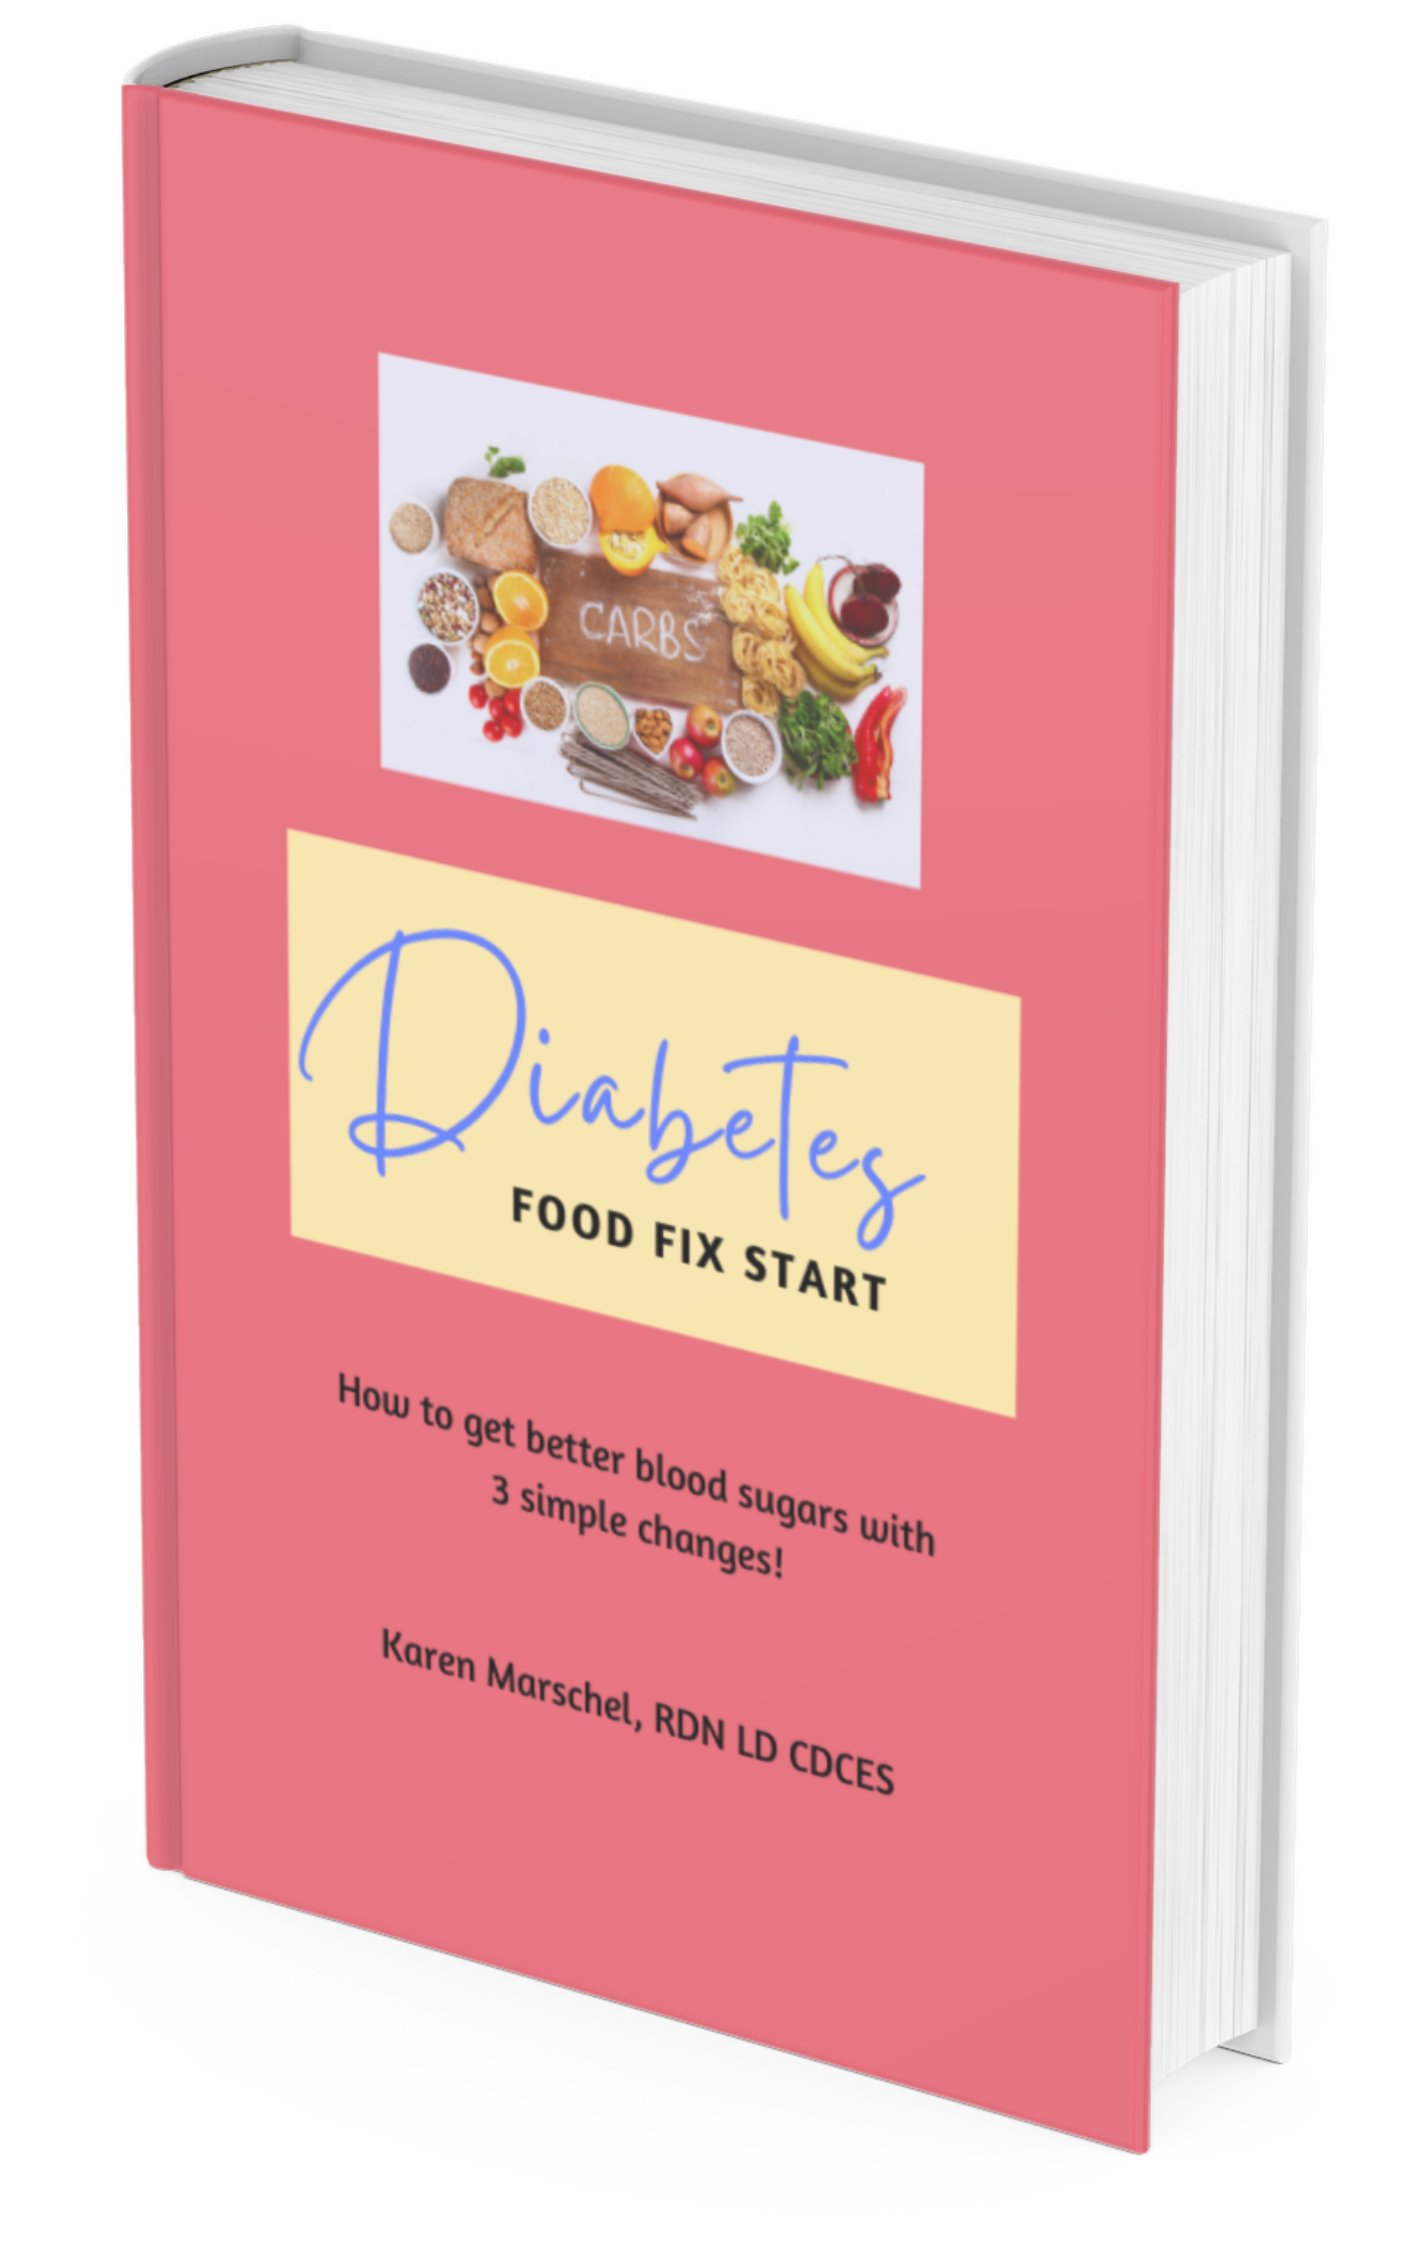 Diabetes Food Fix Book Cover